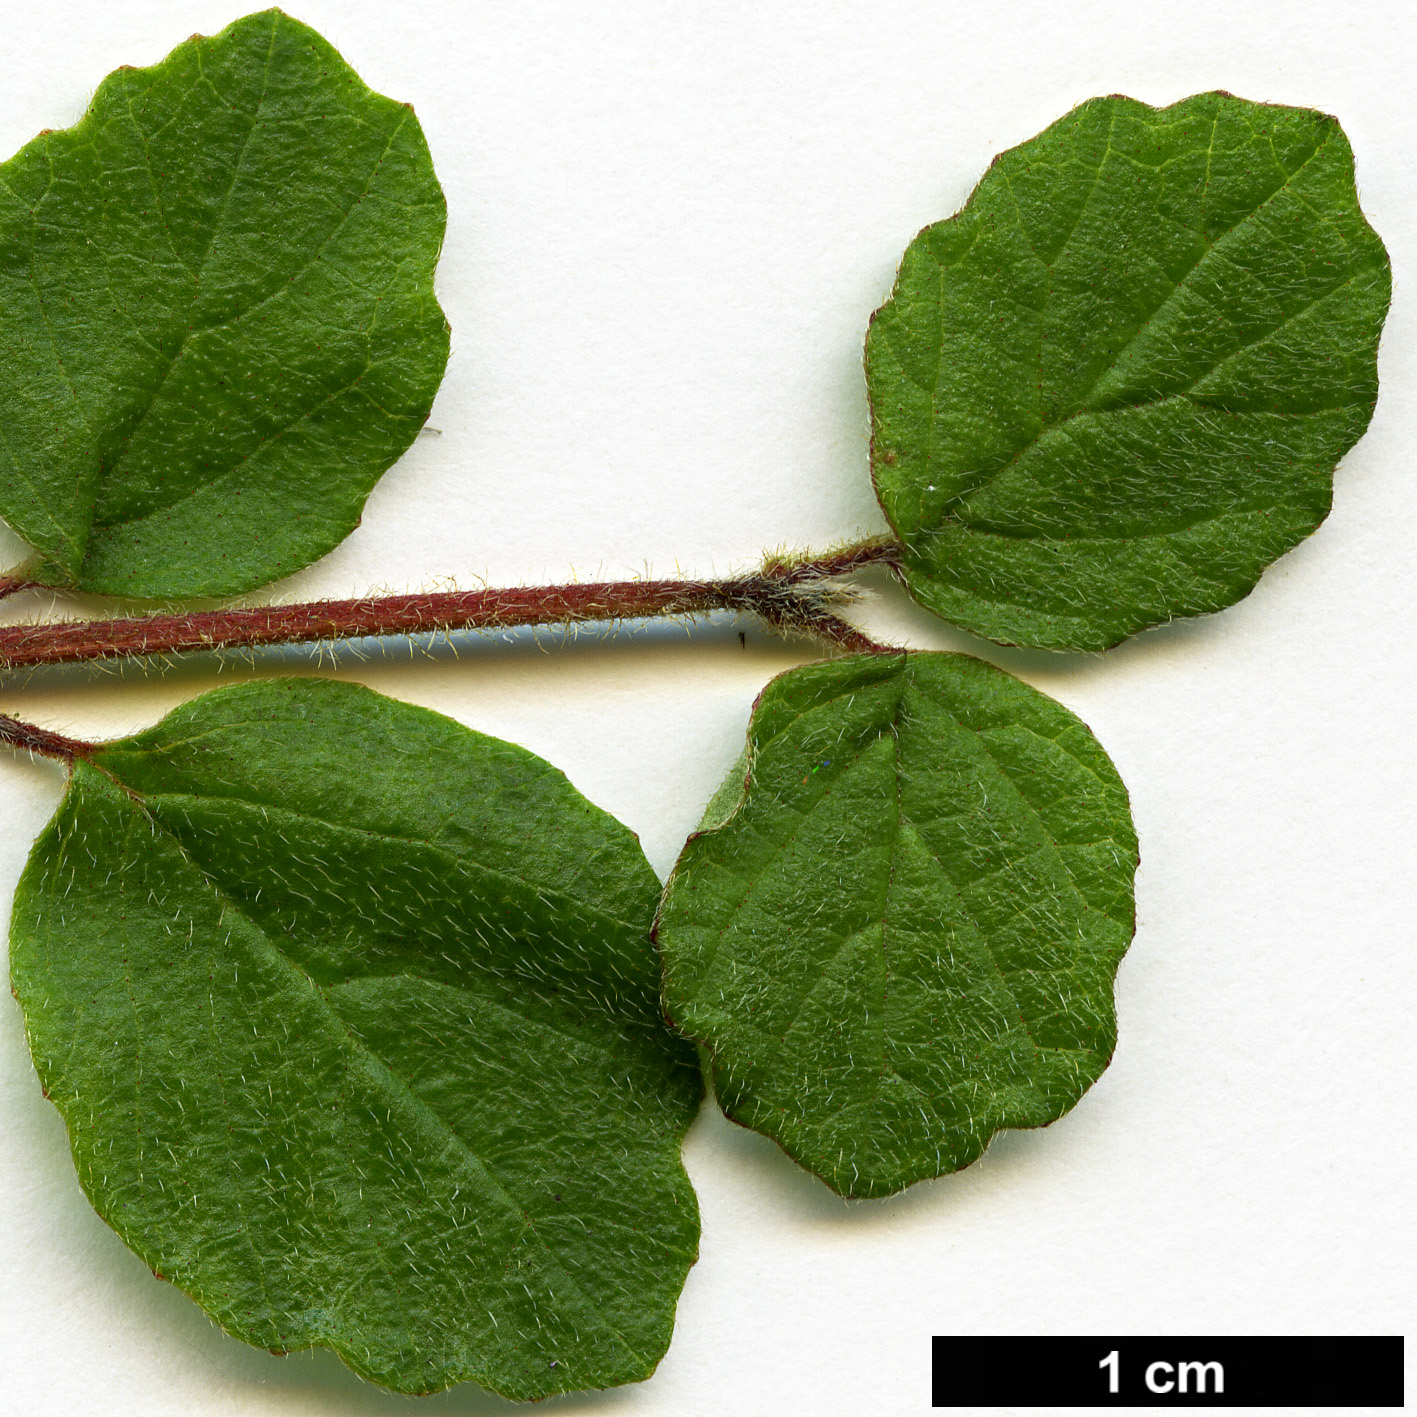 High resolution image: Family: Adoxaceae - Genus: Viburnum - Taxon: parvifolium